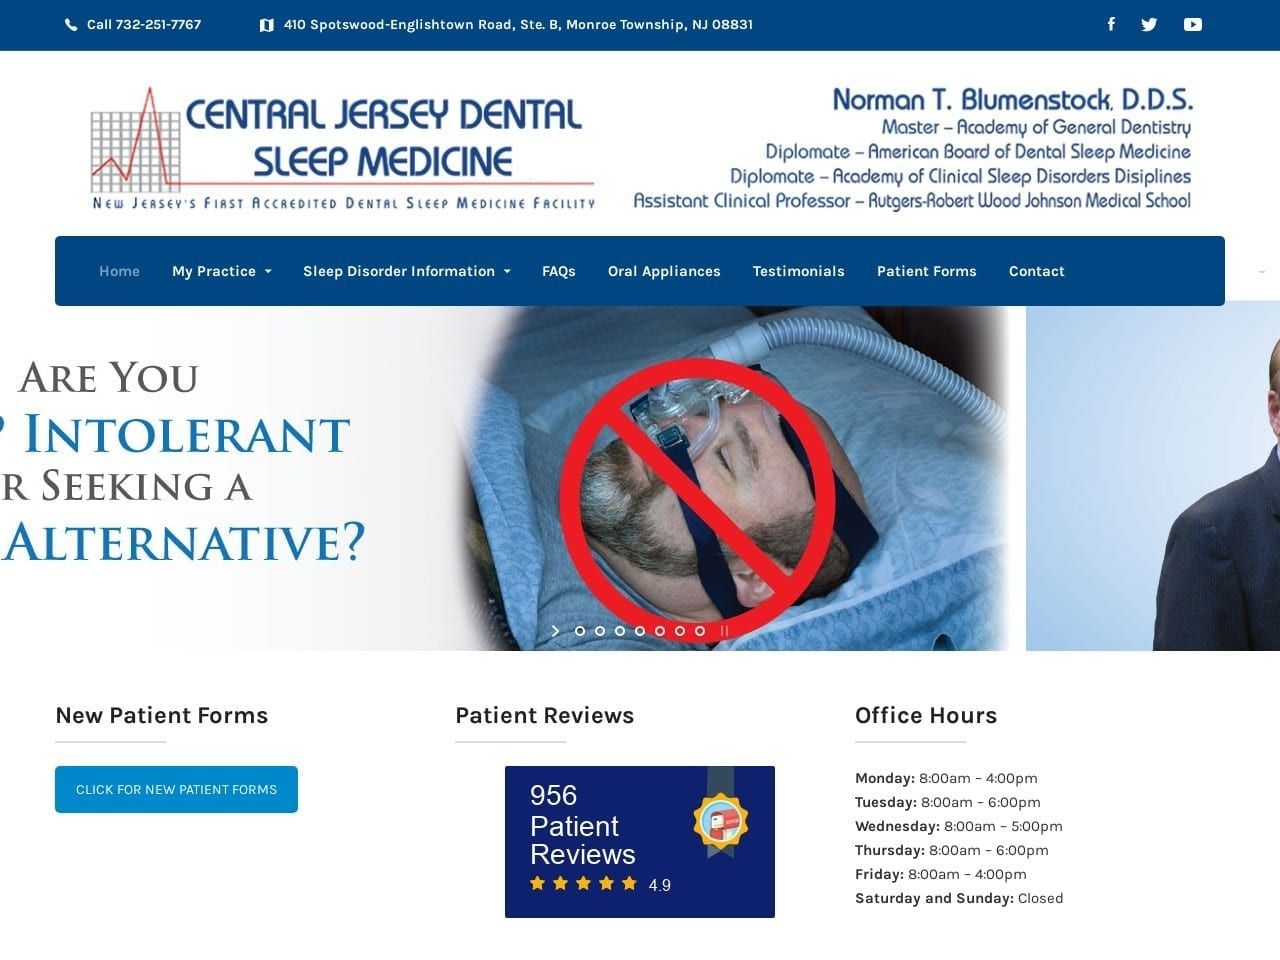 Centraljersey Dental Website Screenshot from centraljerseydental.com